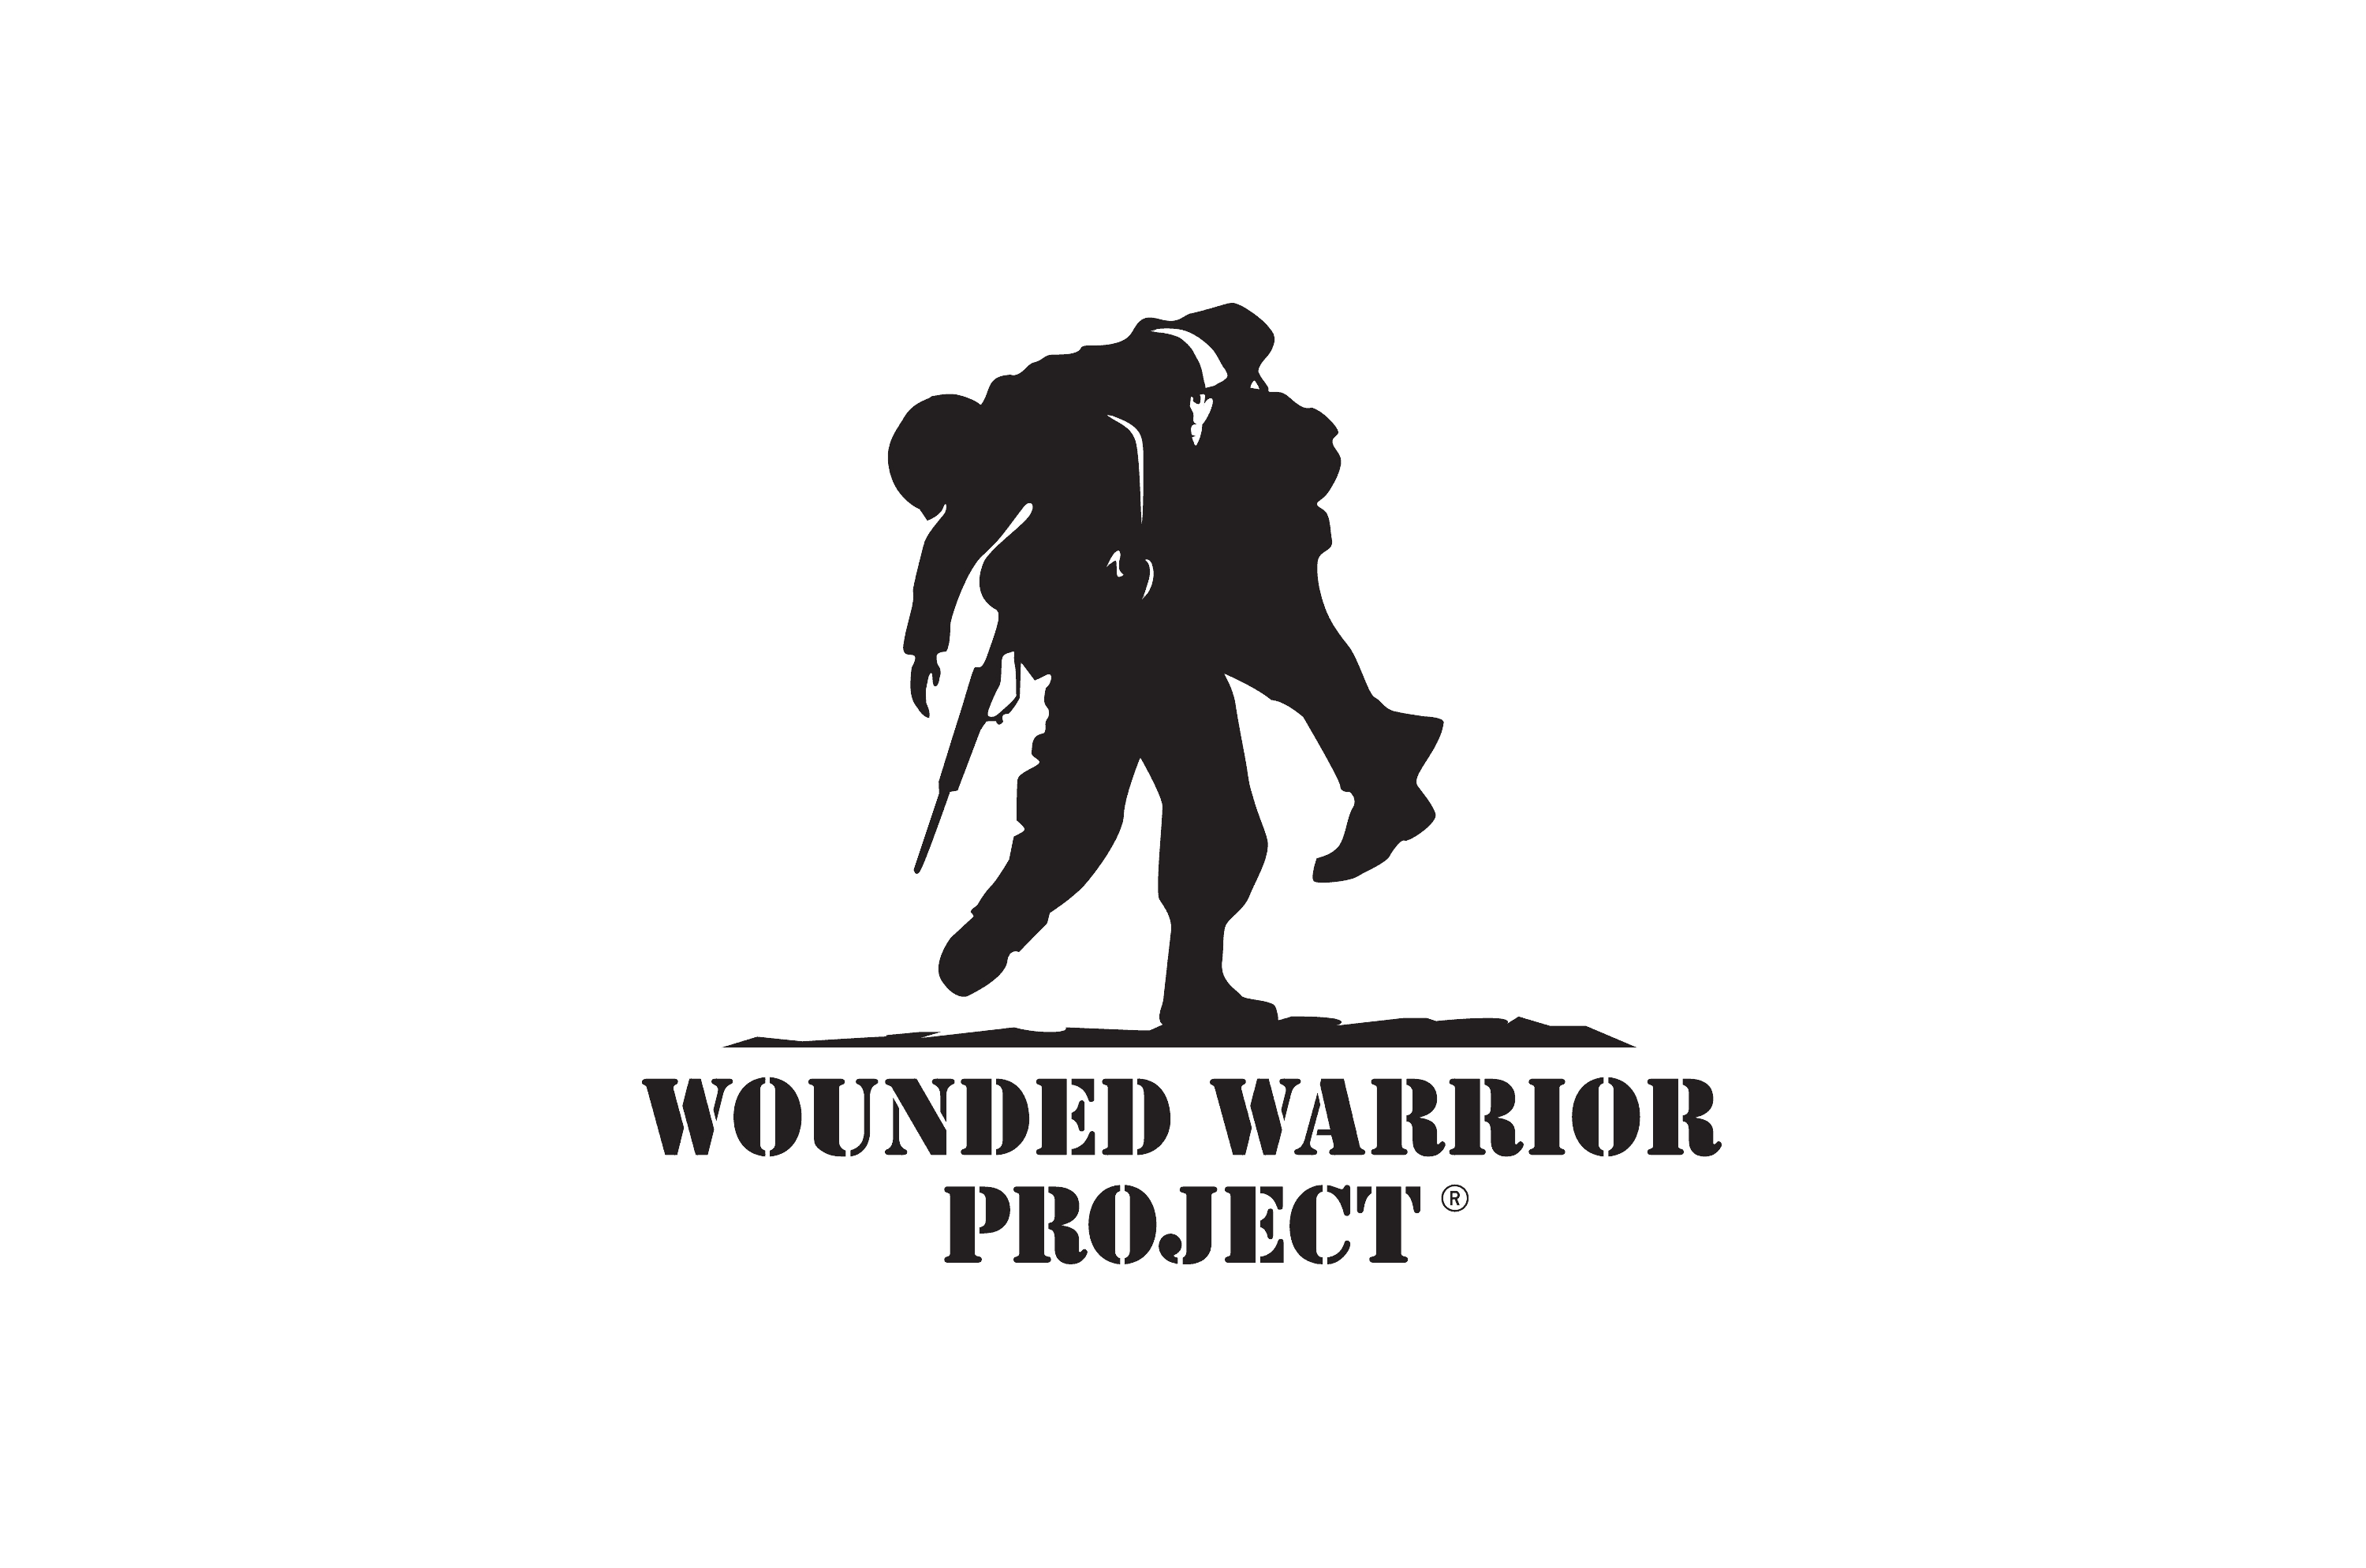 woundedwarriorproject.png?v=65.3.4